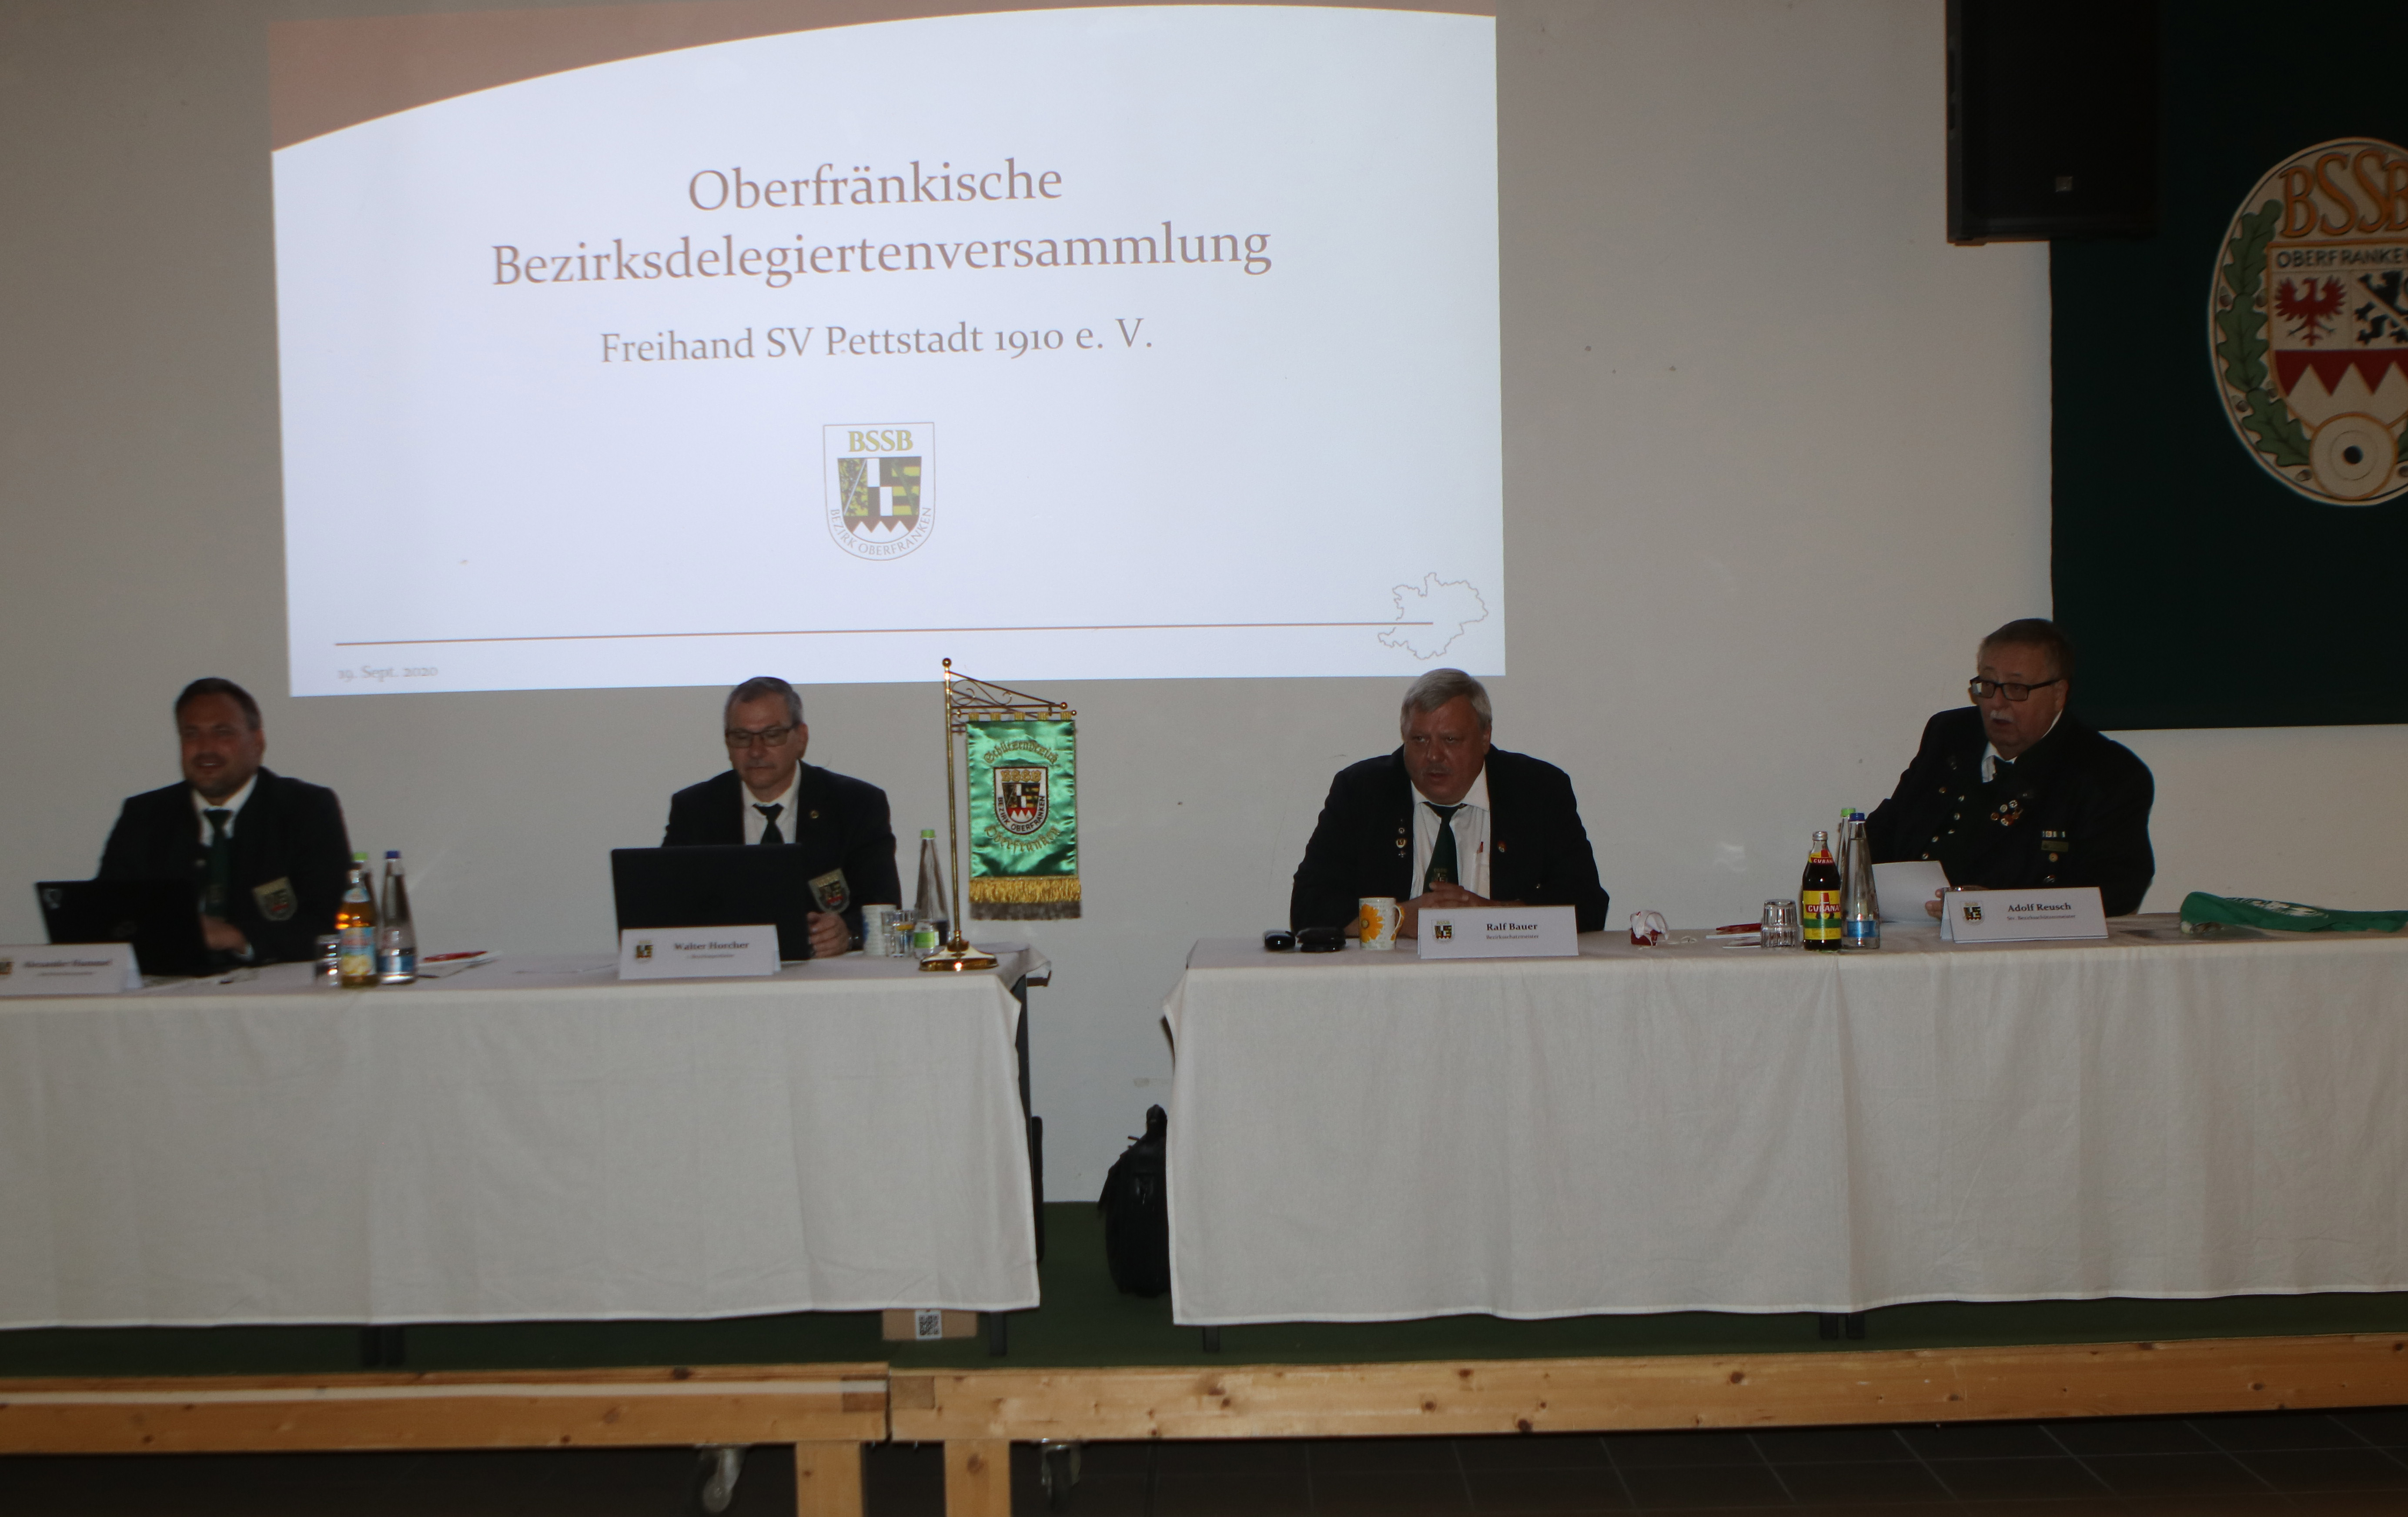 Oberfränkische Bezirksdelegiertenversammlung in Pettstadt